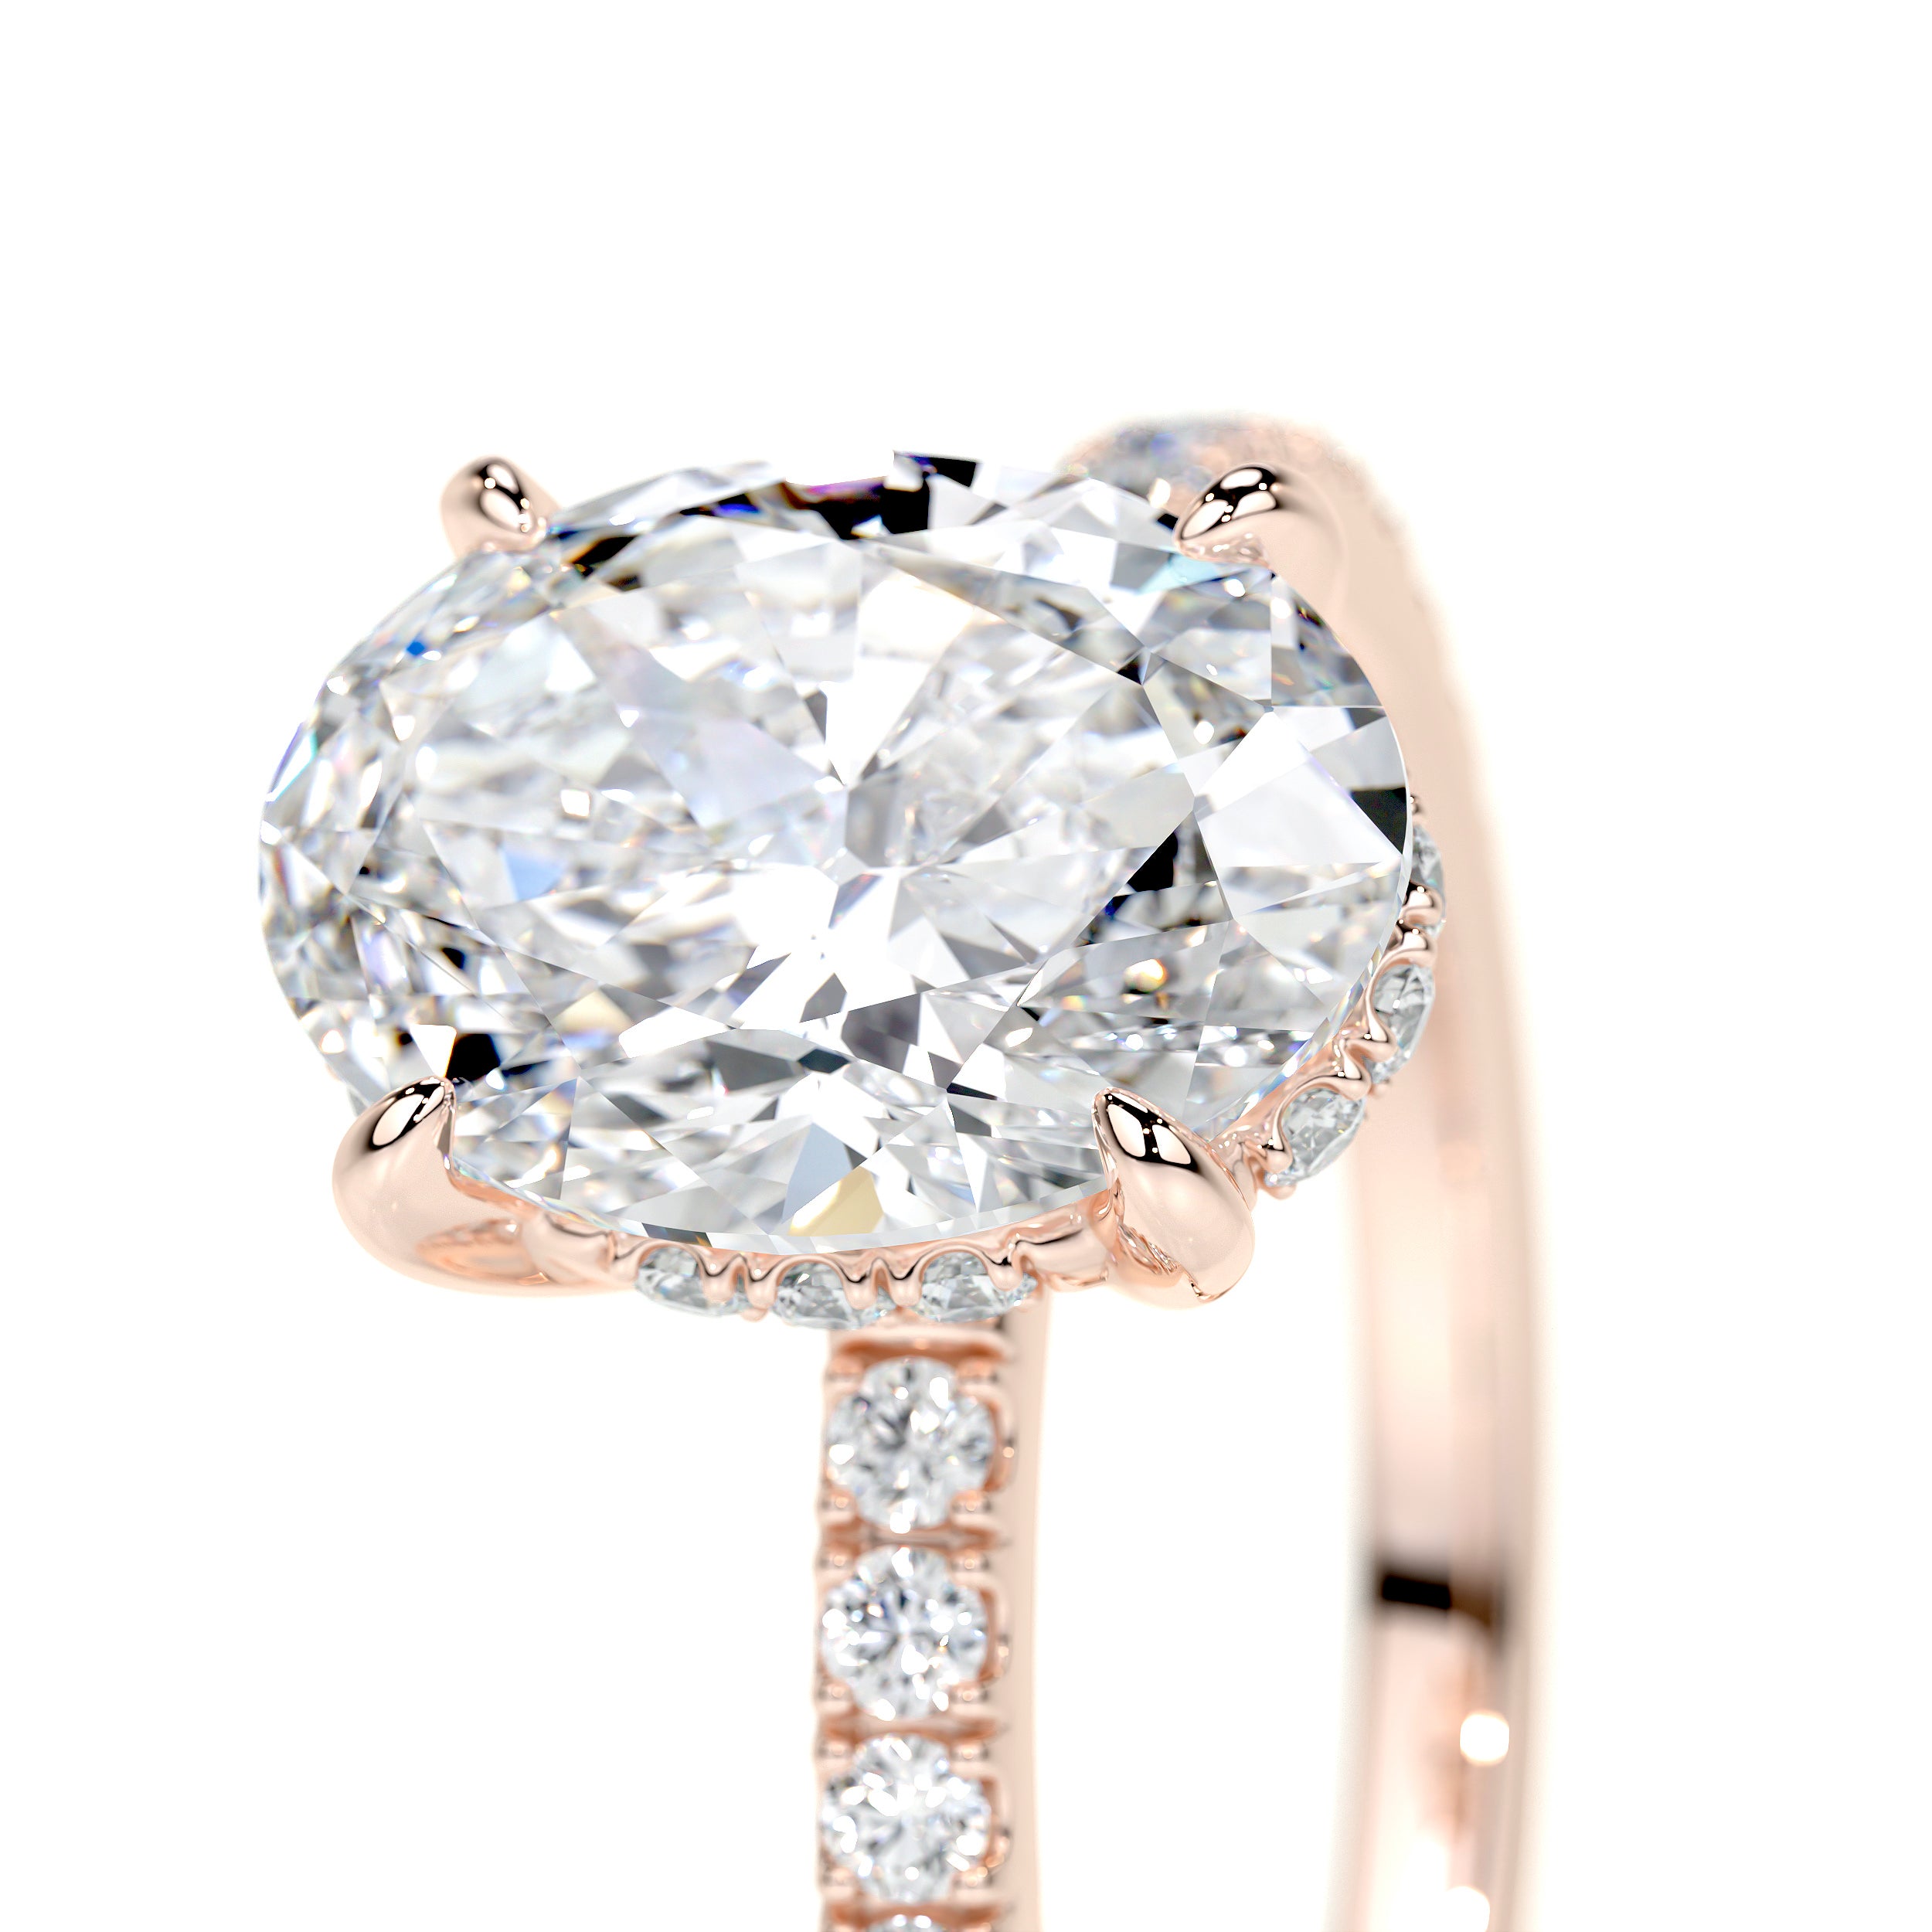 Lucy Lab Grown Diamond Ring   (2 Carat) -14K Rose Gold